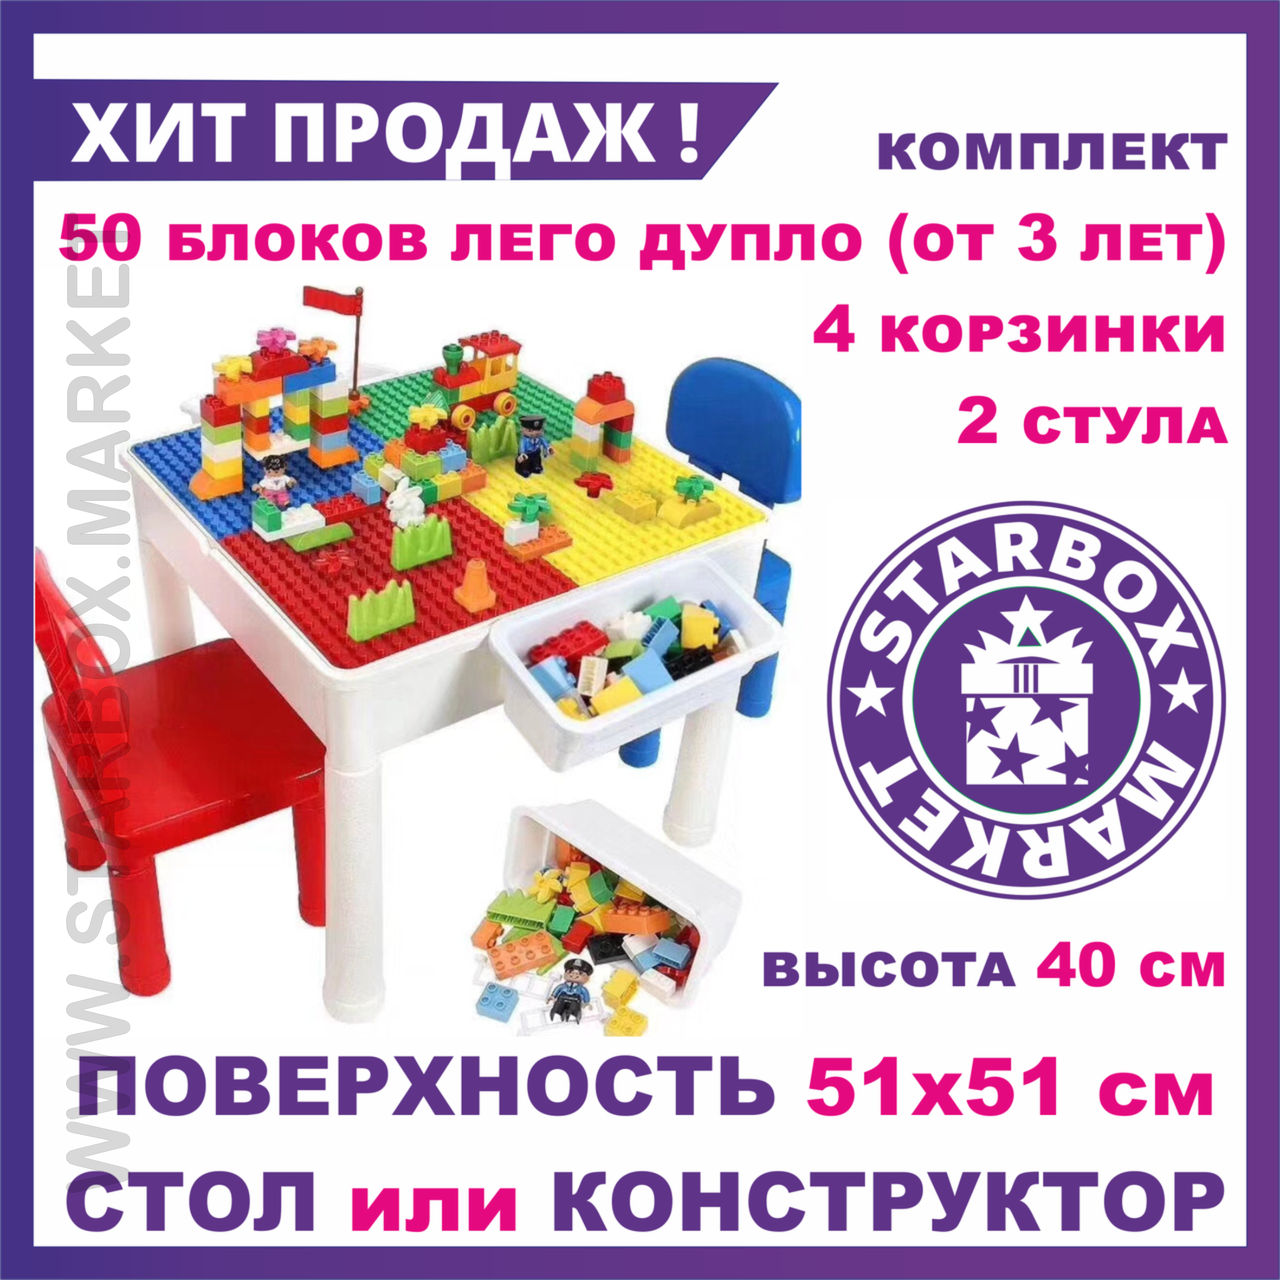 Стол конструктор Lego Duplo с 2 стульями, 3 в 1 детский стол трансформер Лего Дупло (аналог), фото 1